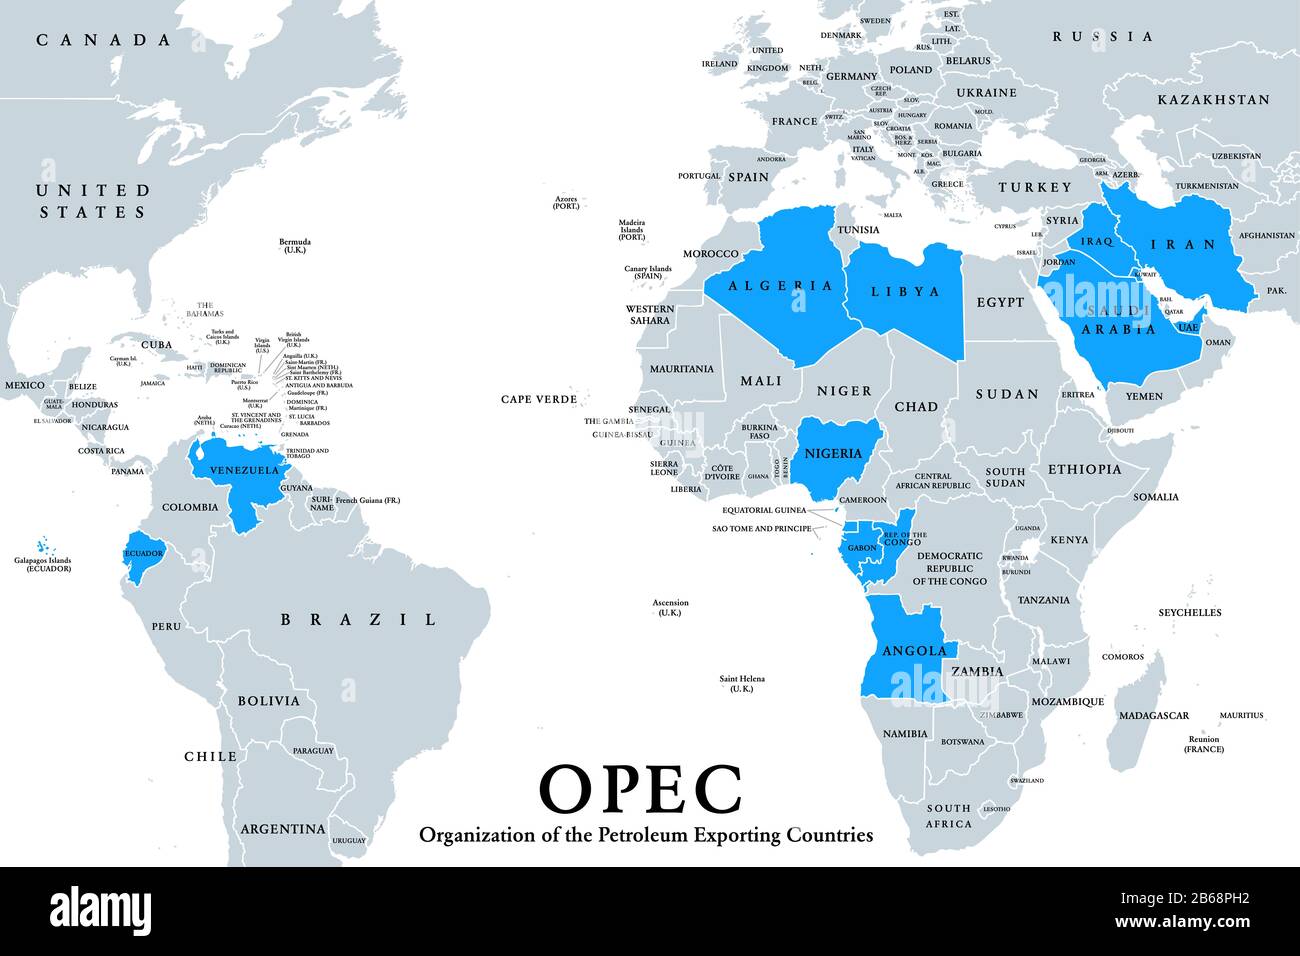 OPEC-Mitgliedsstaaten, politische Karte, englische Kennzeichnung. Organisation der Erdölexportierenden Länder, Organisation von 14 Nationen. Stockfoto